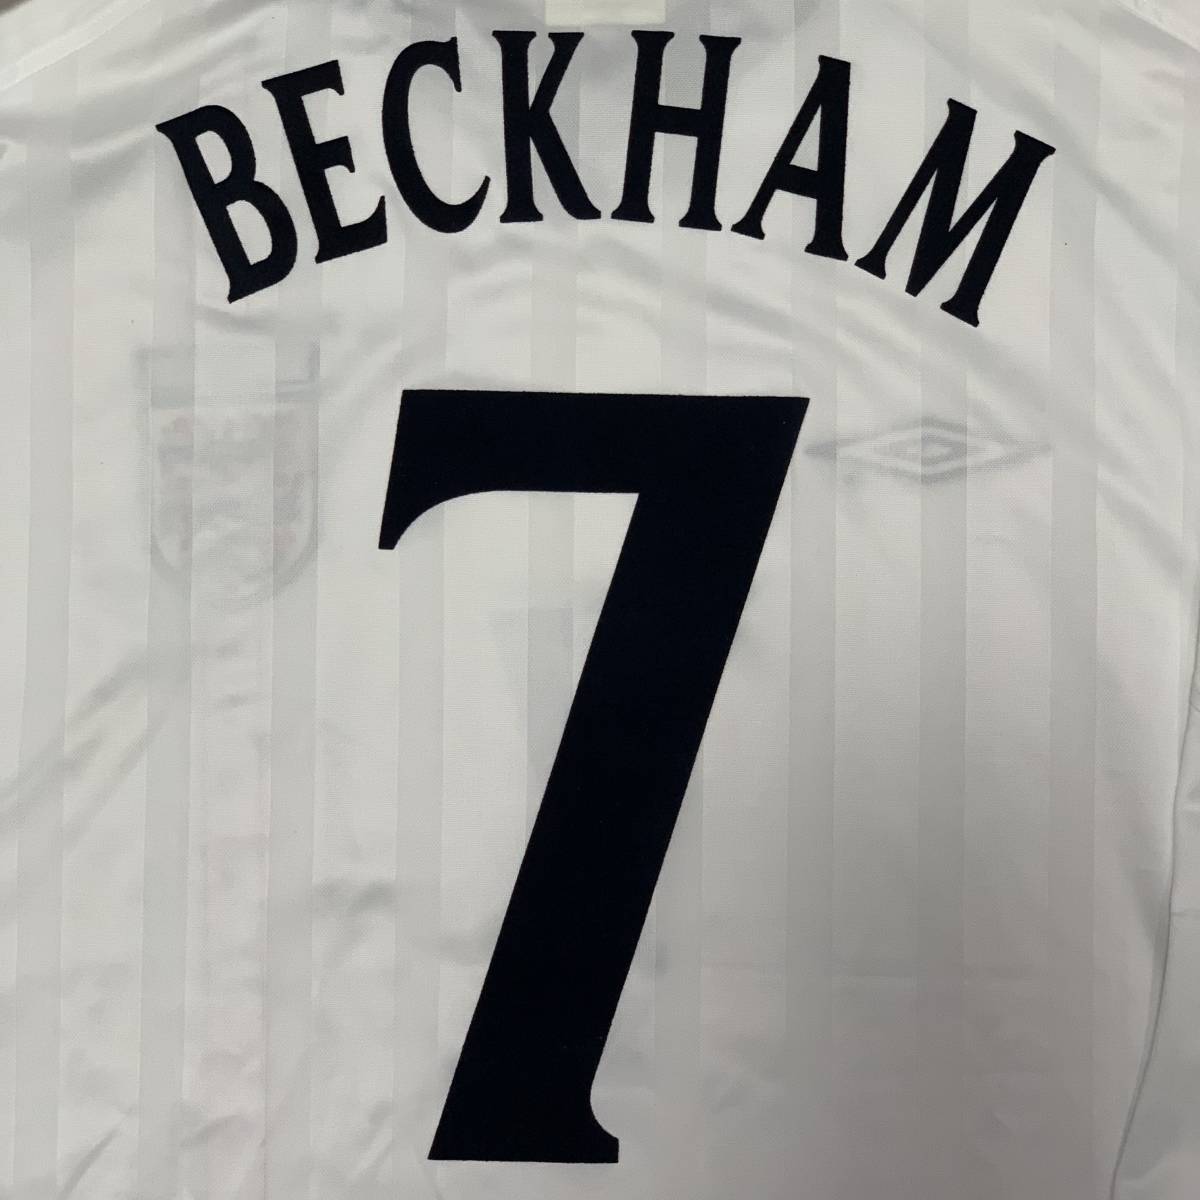 2002 02 イングランド代表 ベッカム ユニフォーム 新品 ブラジル戦 長袖 上下 日韓 W杯 XL アンブロ マンチェスター マンU  England Beckham